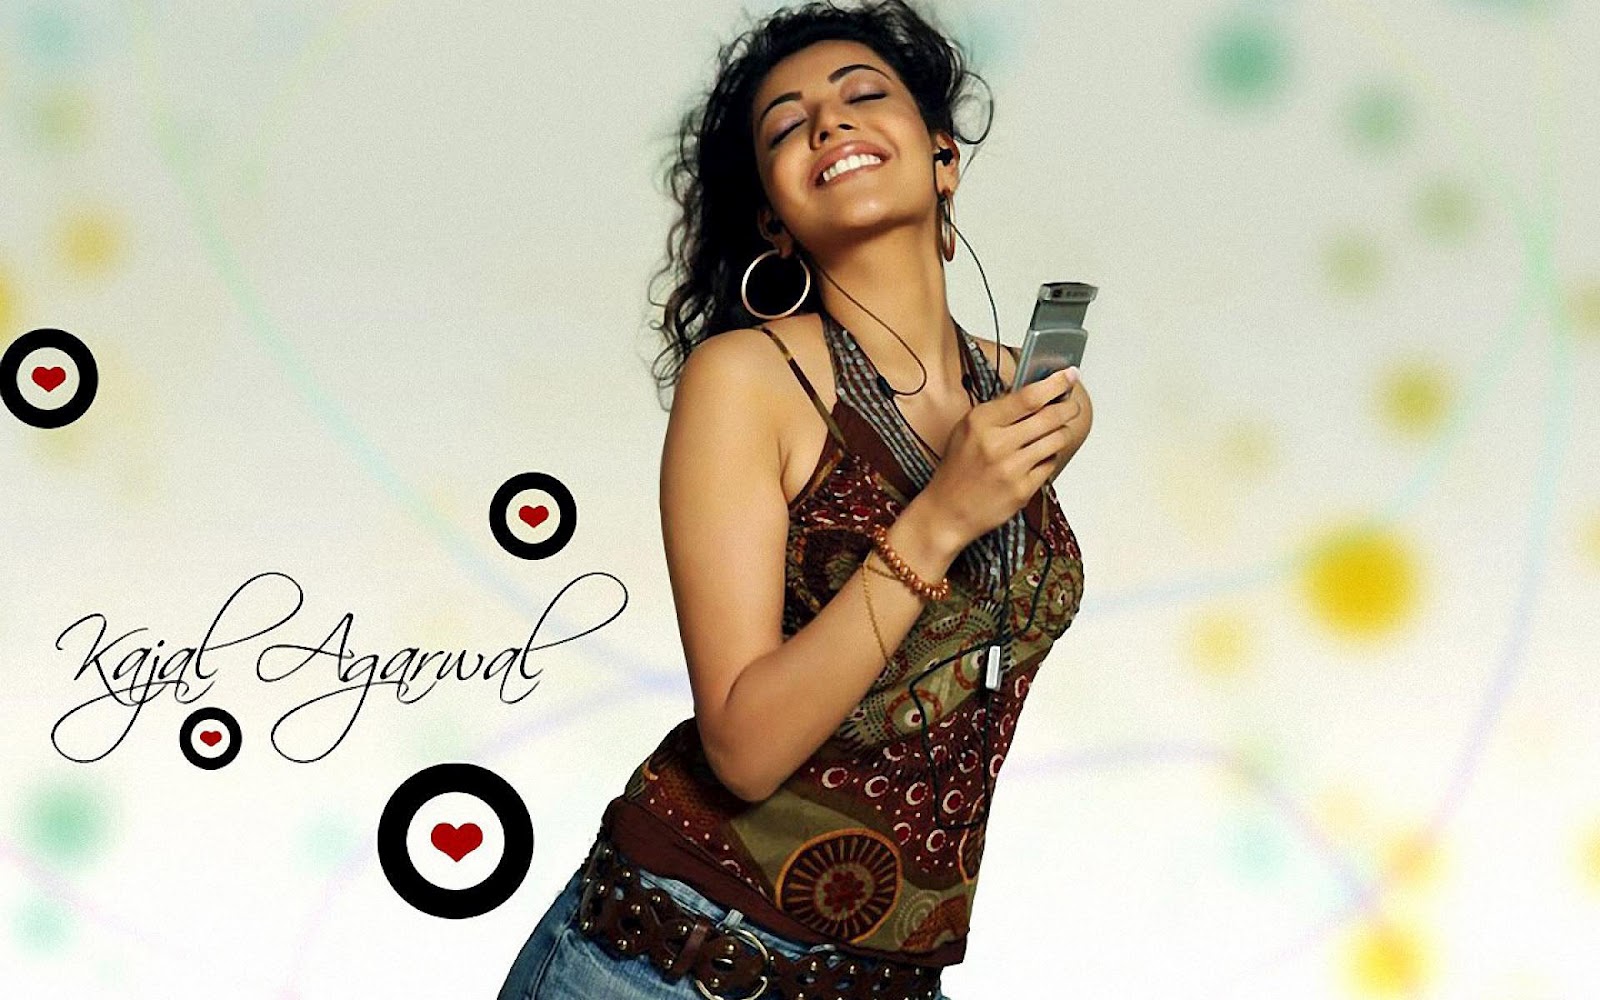 Best-top-desktop-kajal-wallpapers-hd-kajal-agarwal-wallpaper-picture-photo-background-indian-actress-08.jpg